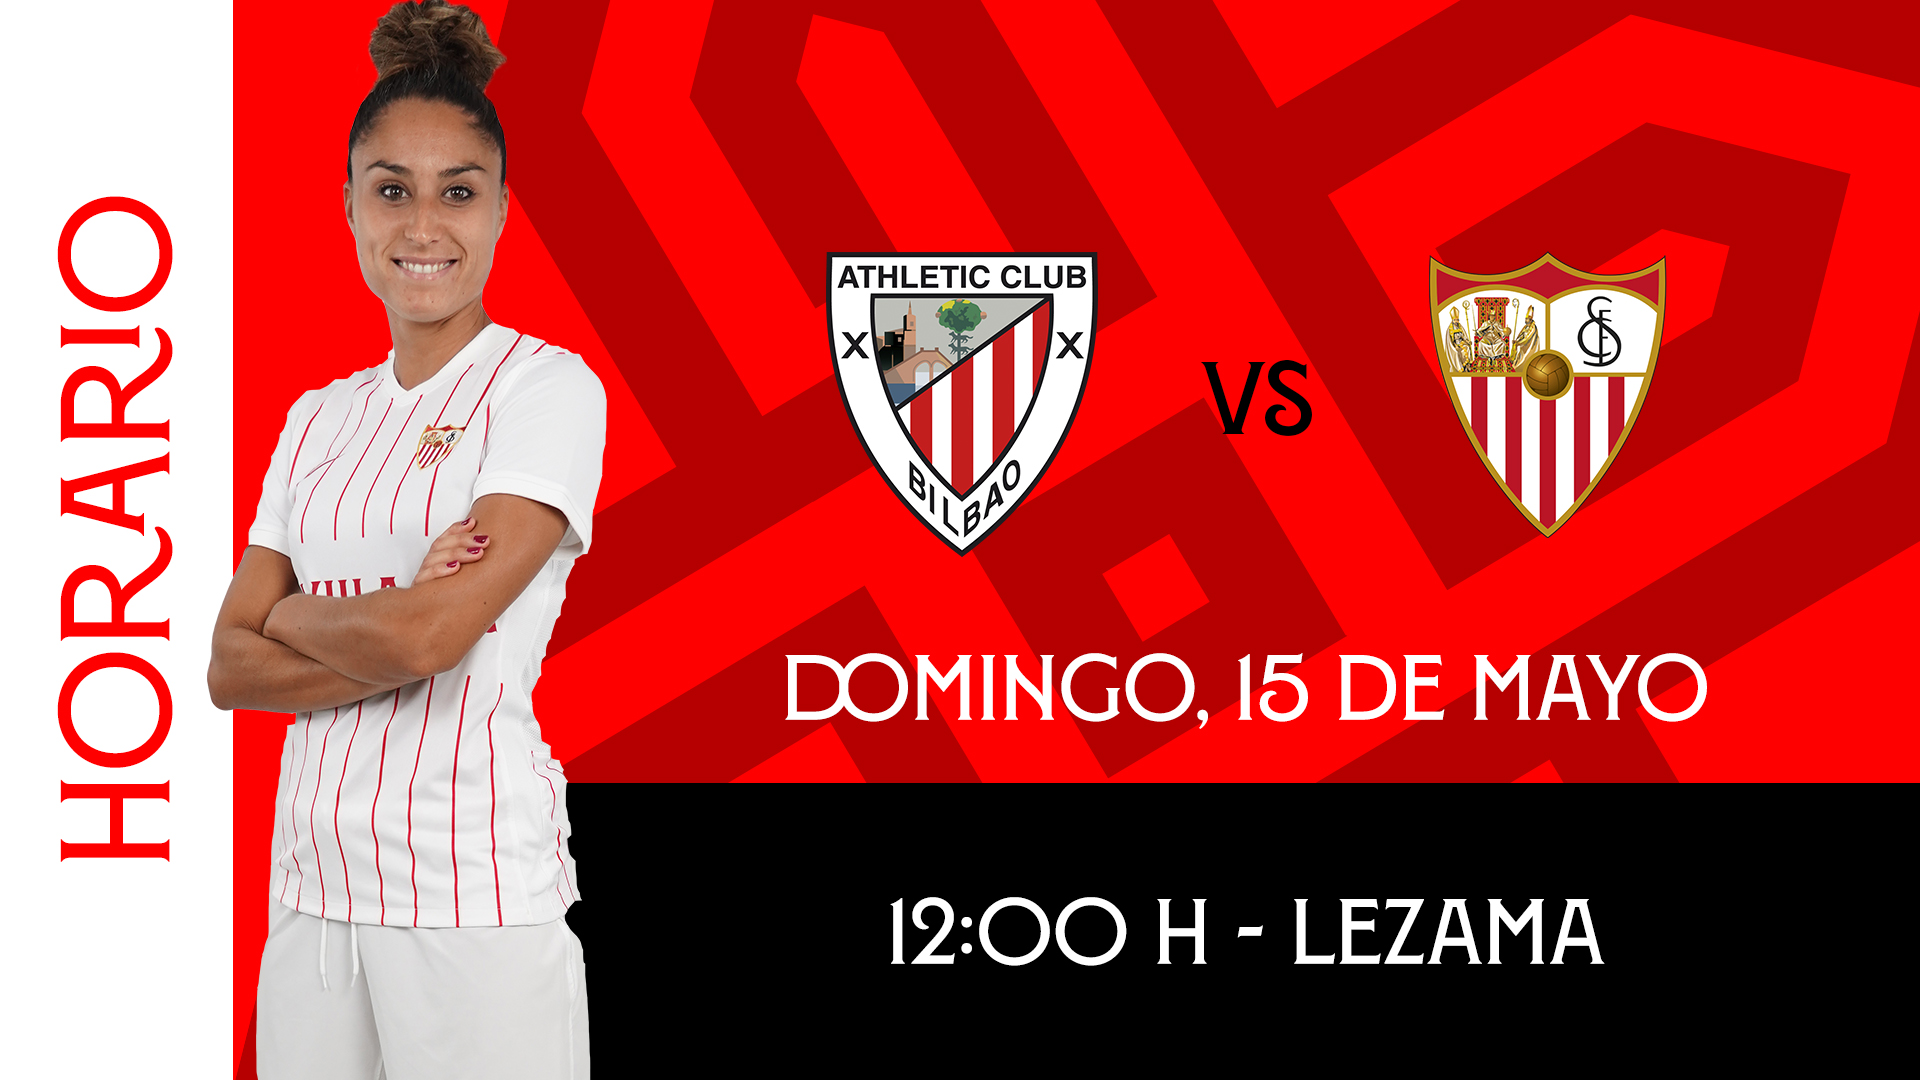 Sevilla FC femenino game